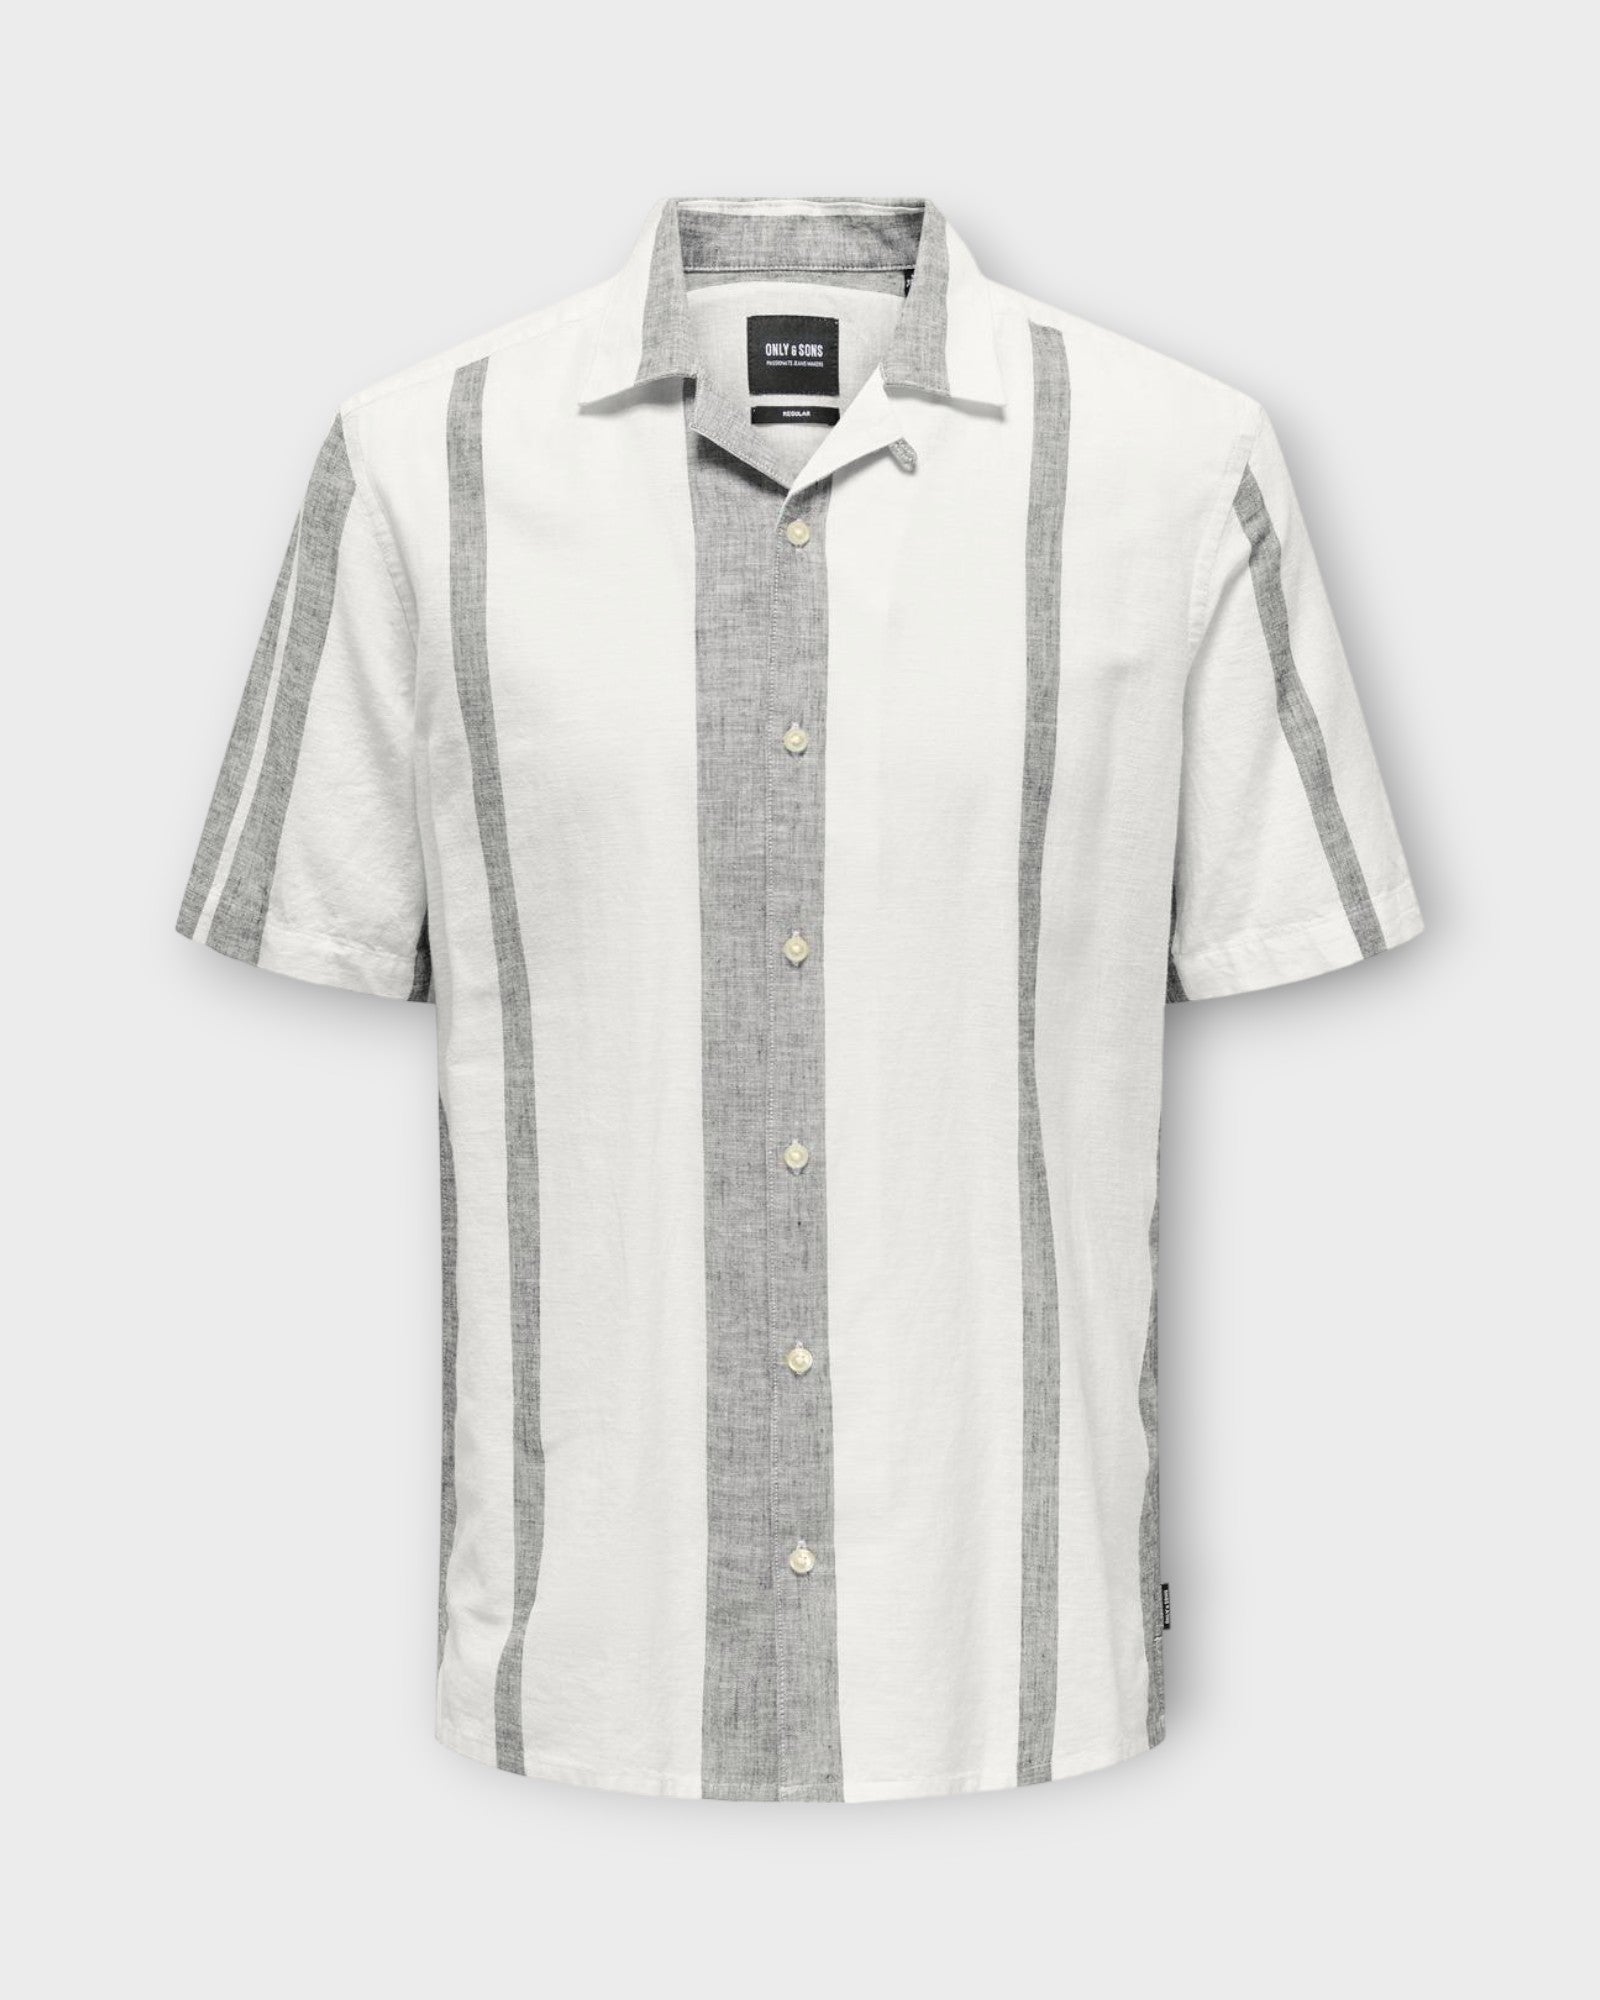 Caiden Stripe Linen Resort Shirt Cloud Dancer fra Only and Sons. Kortærmet stribet hørskjorte til mænd. Her set forfra.